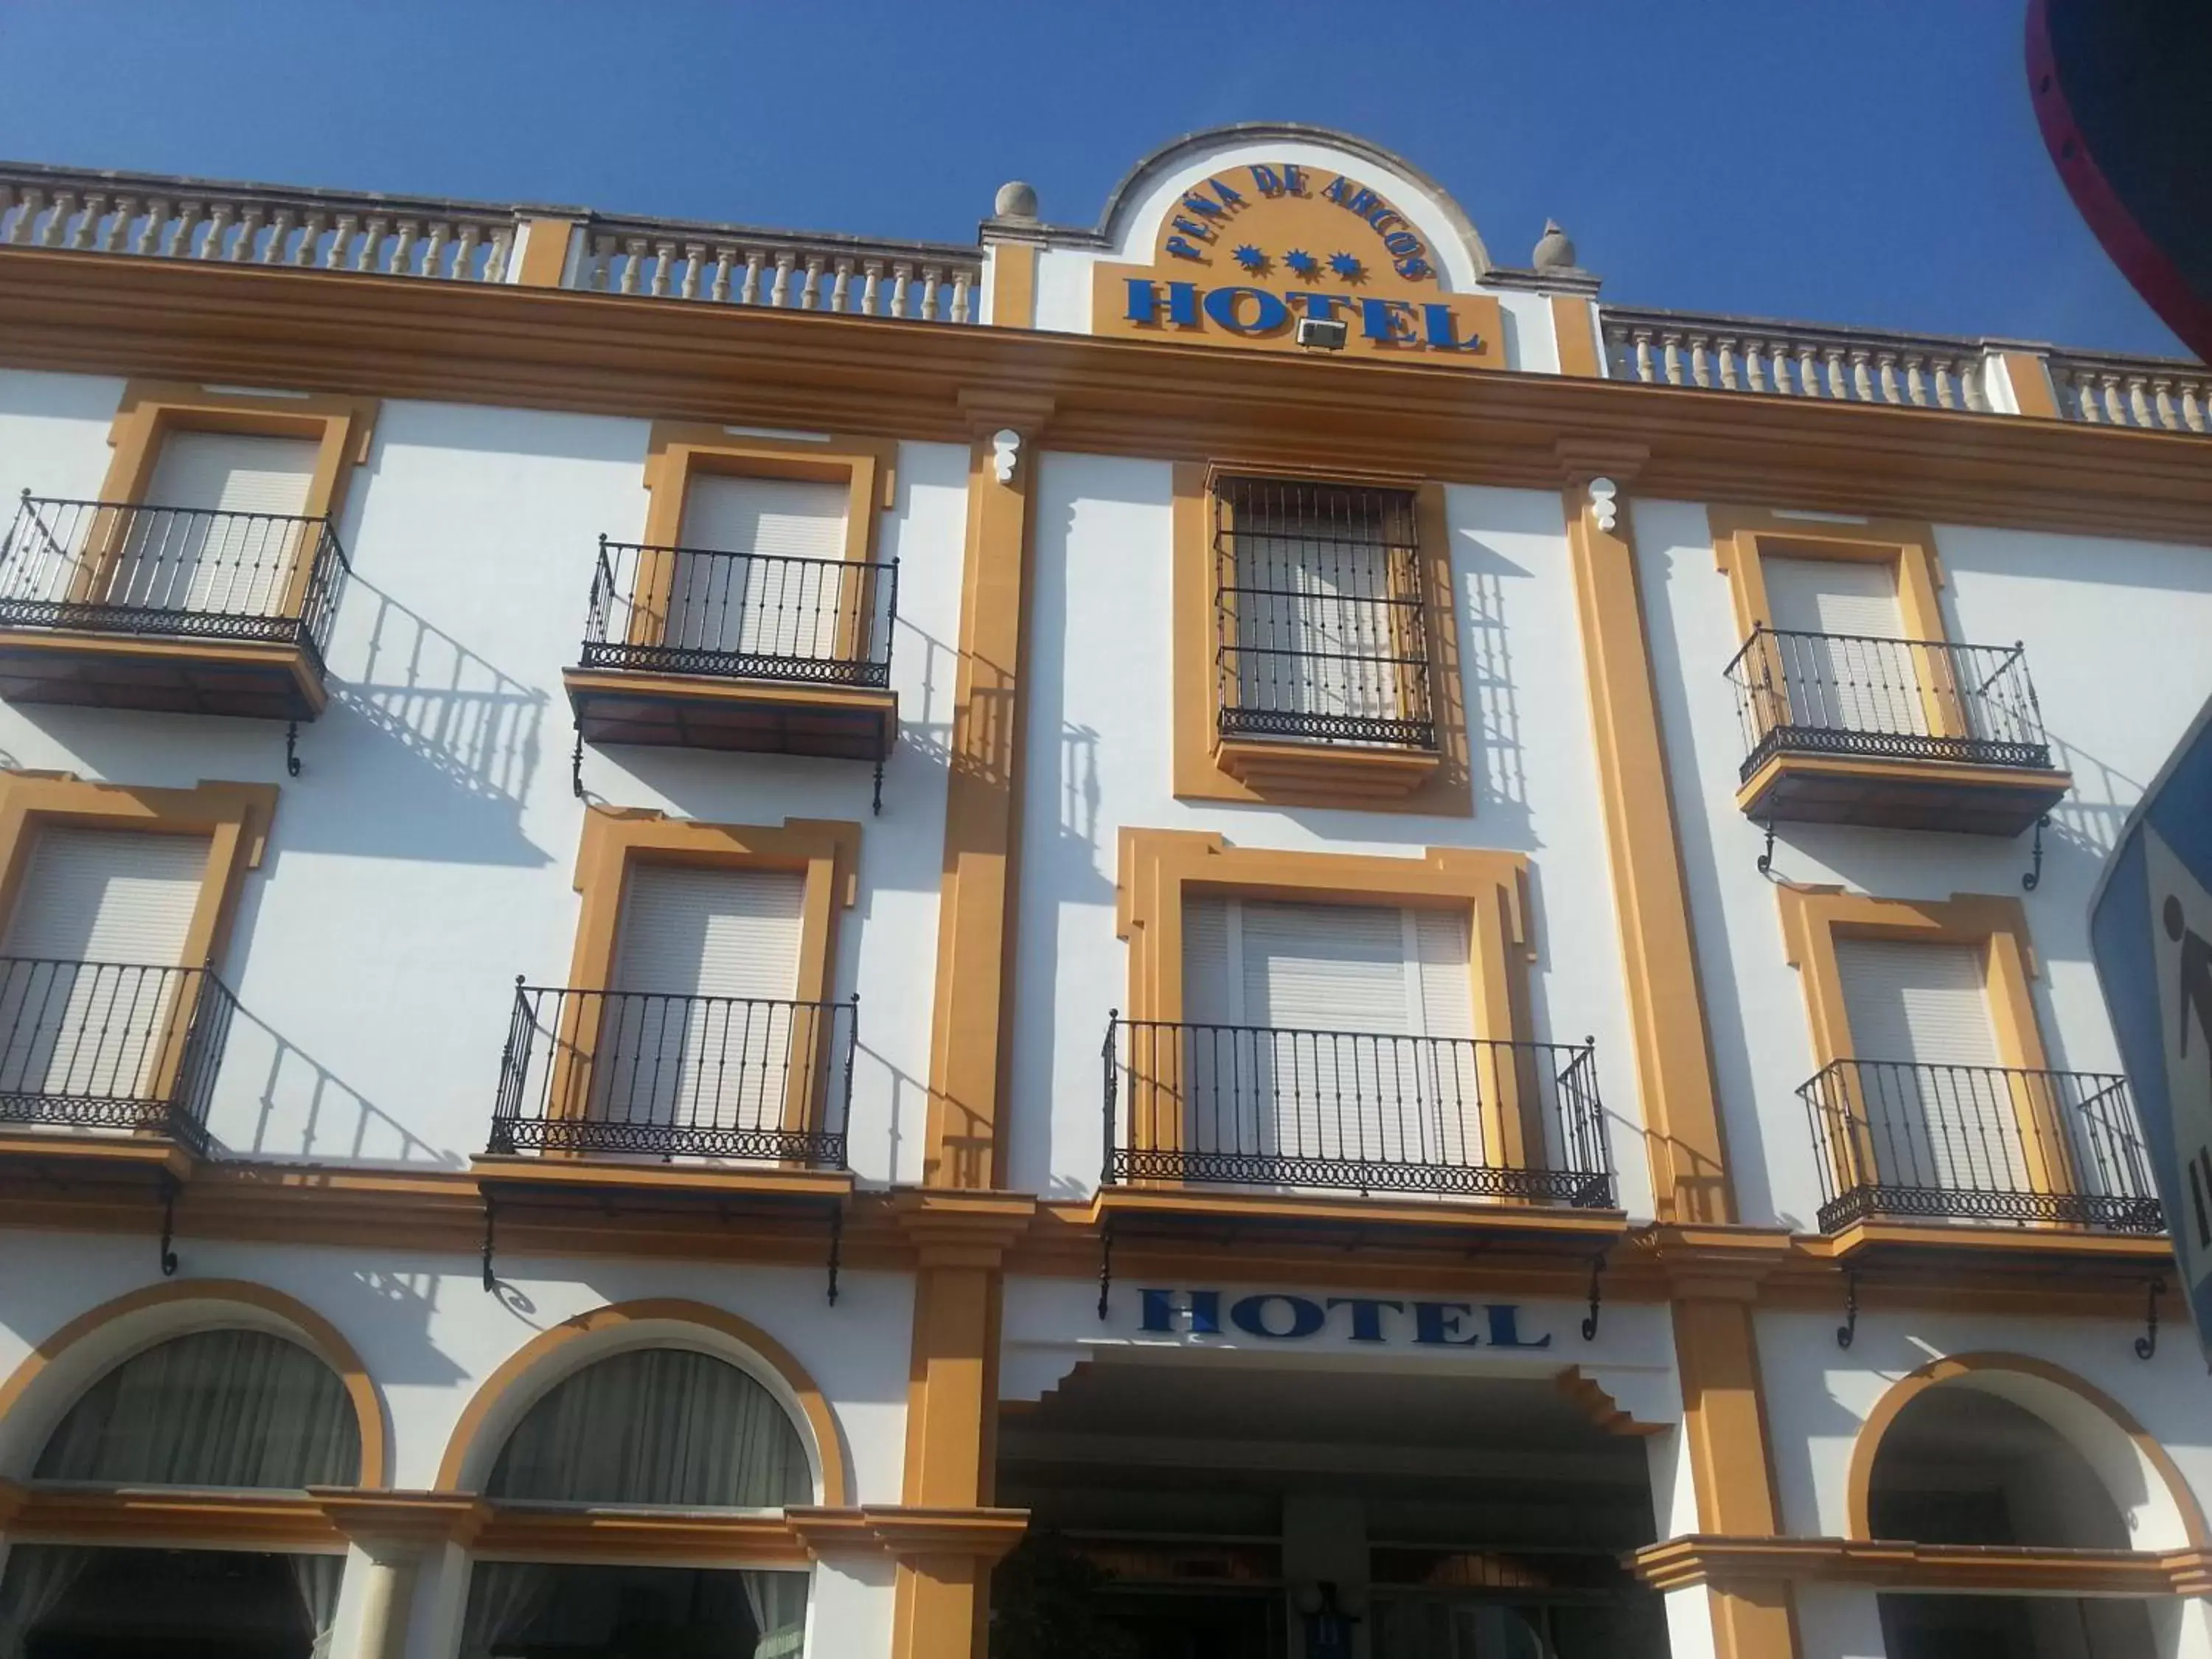 Property Building in Hotel Peña de Arcos